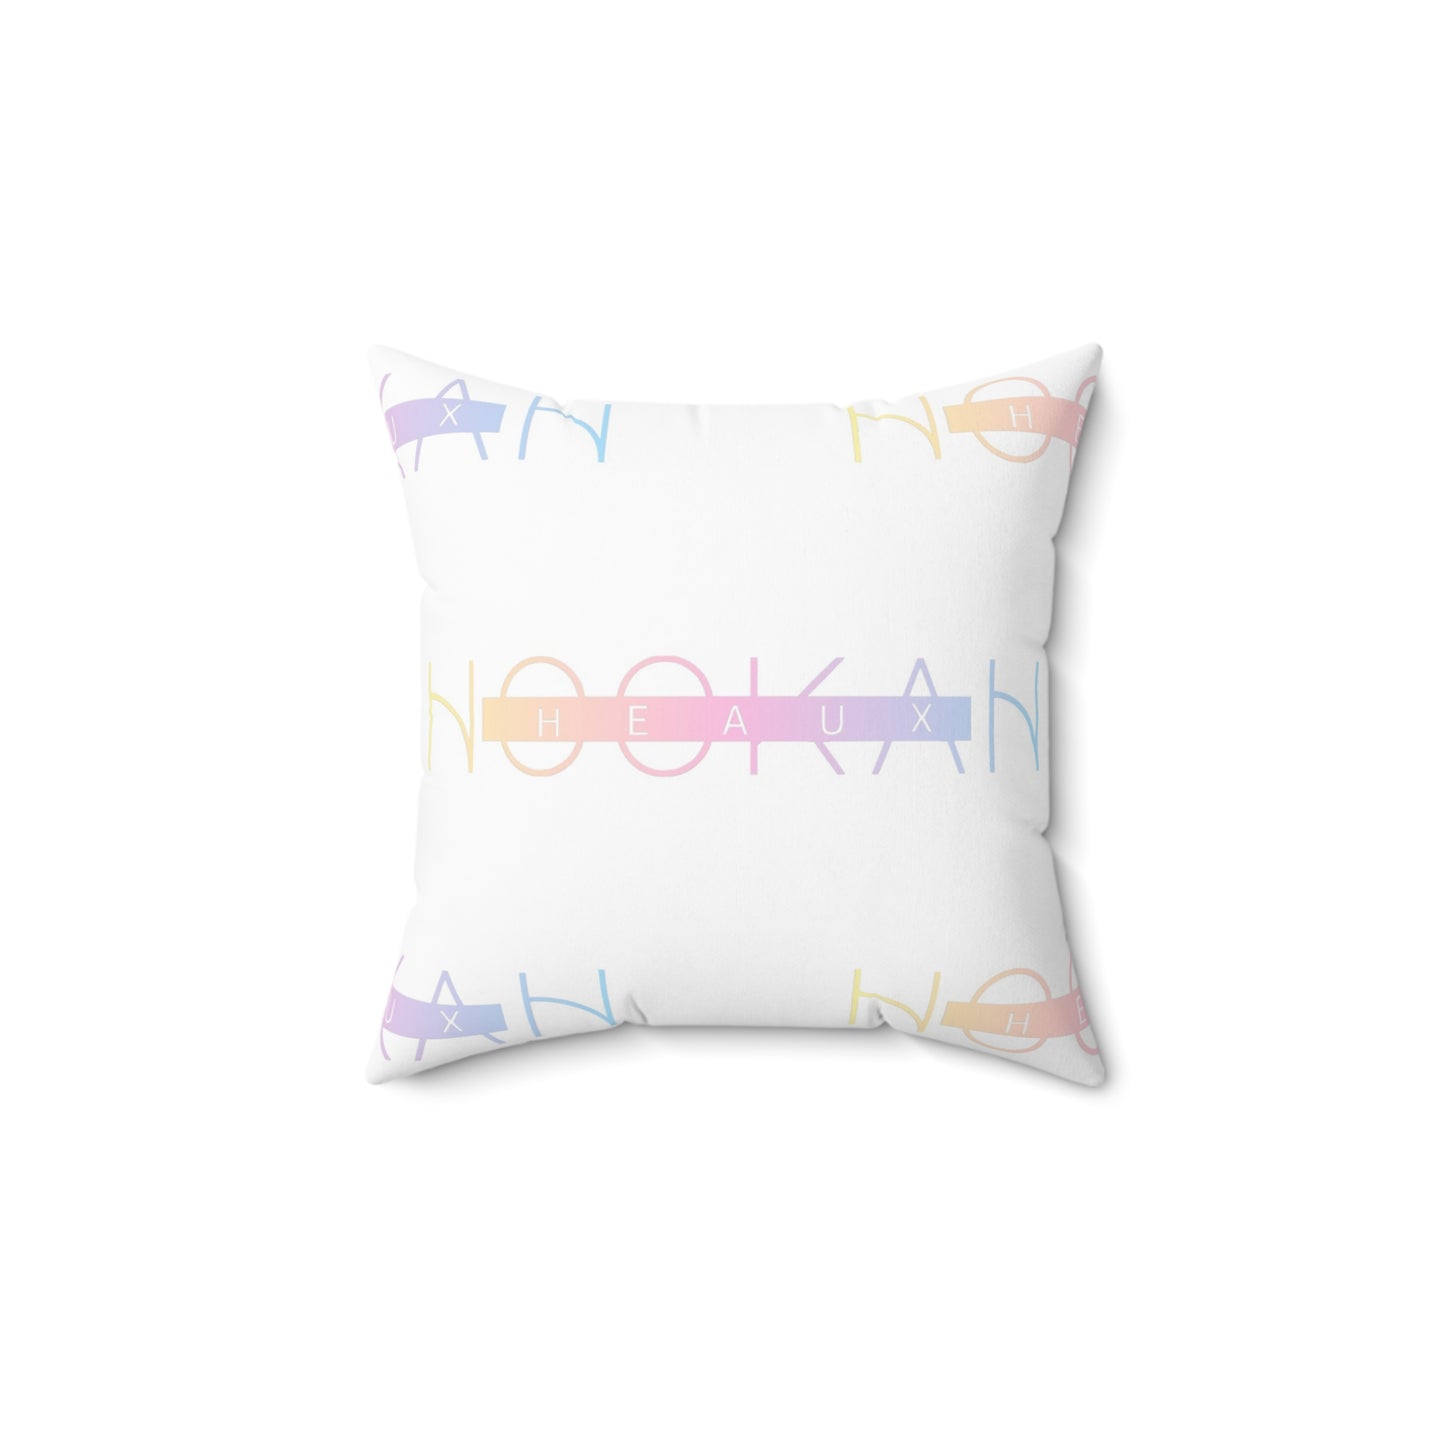 Hookah Heaux Spun Polyester Square Pillow